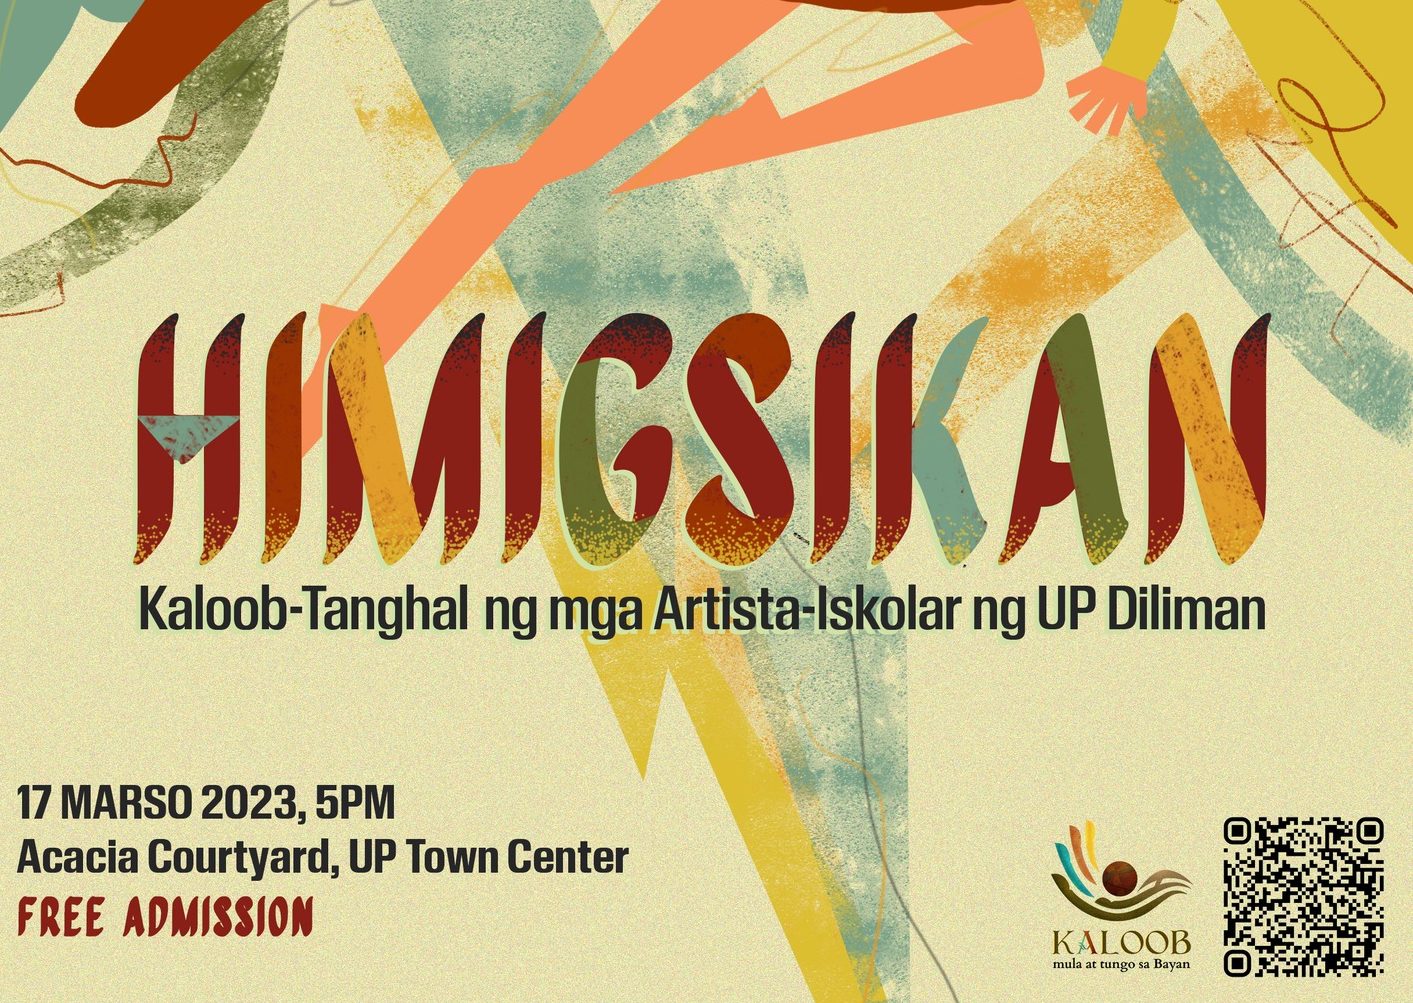 Himigsikan: Kaloob-Tanghal ng mga Artista-Iskolar ng UP Diliman ...